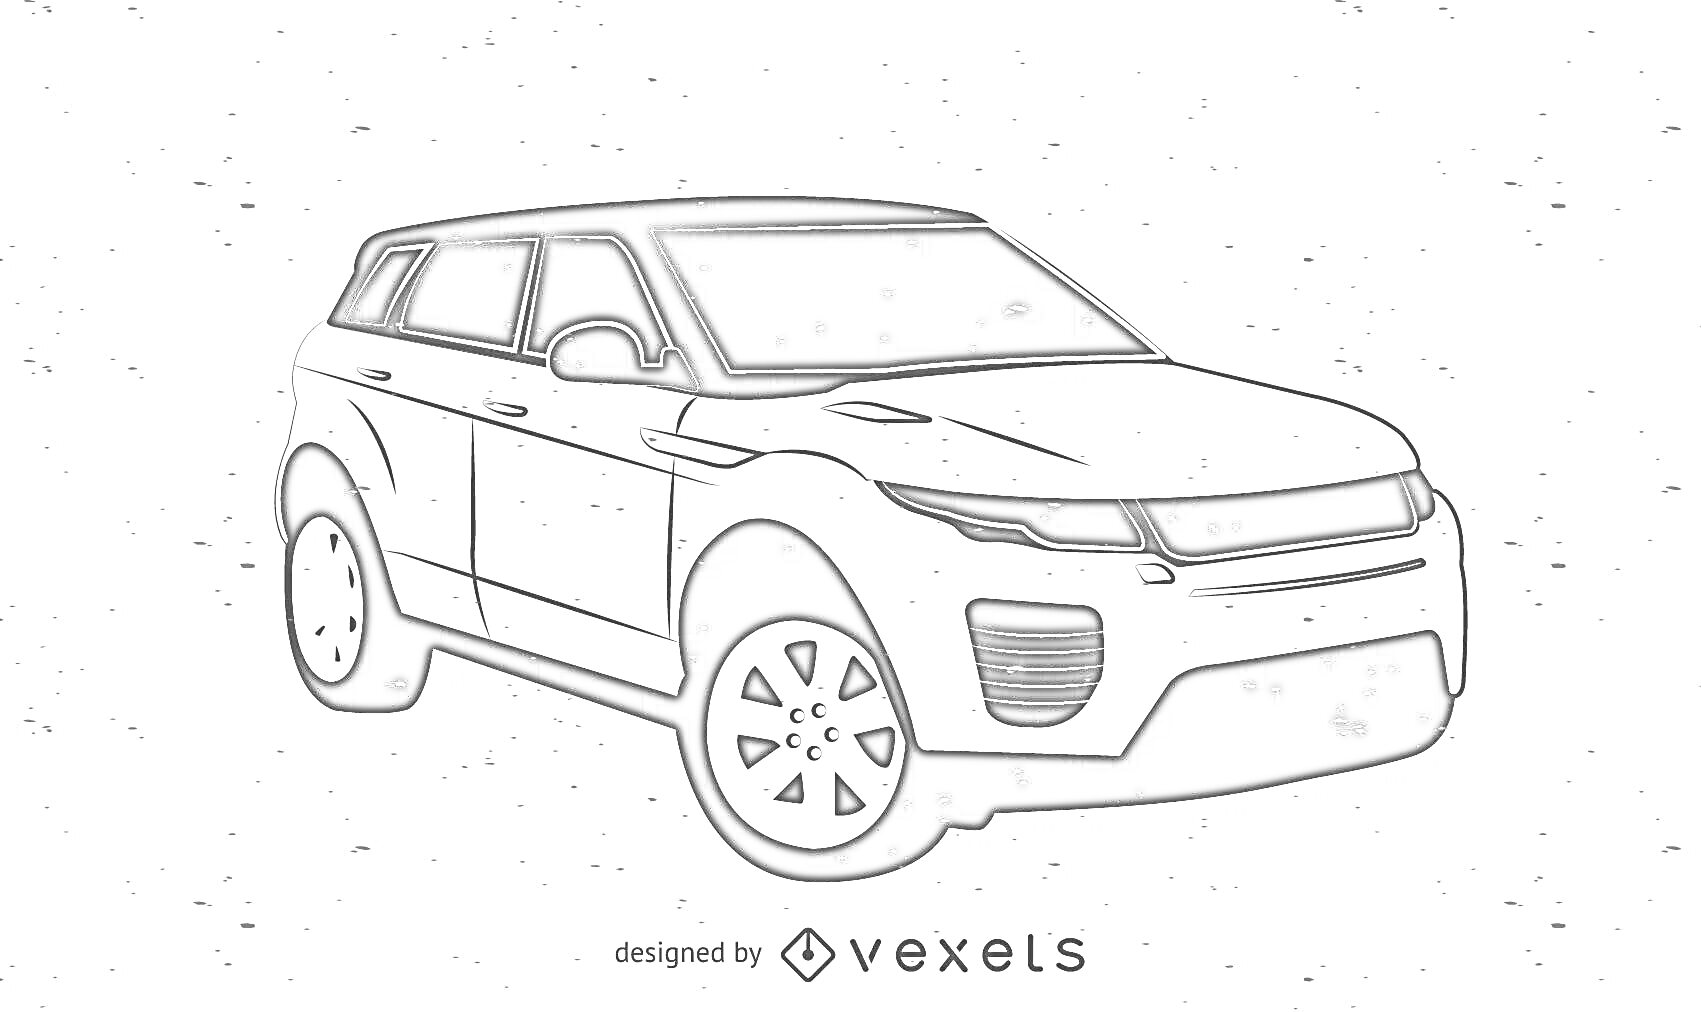 Раскраска Черно-белая раскраска внедорожника Range Rover с фирменной надписью Vexels.